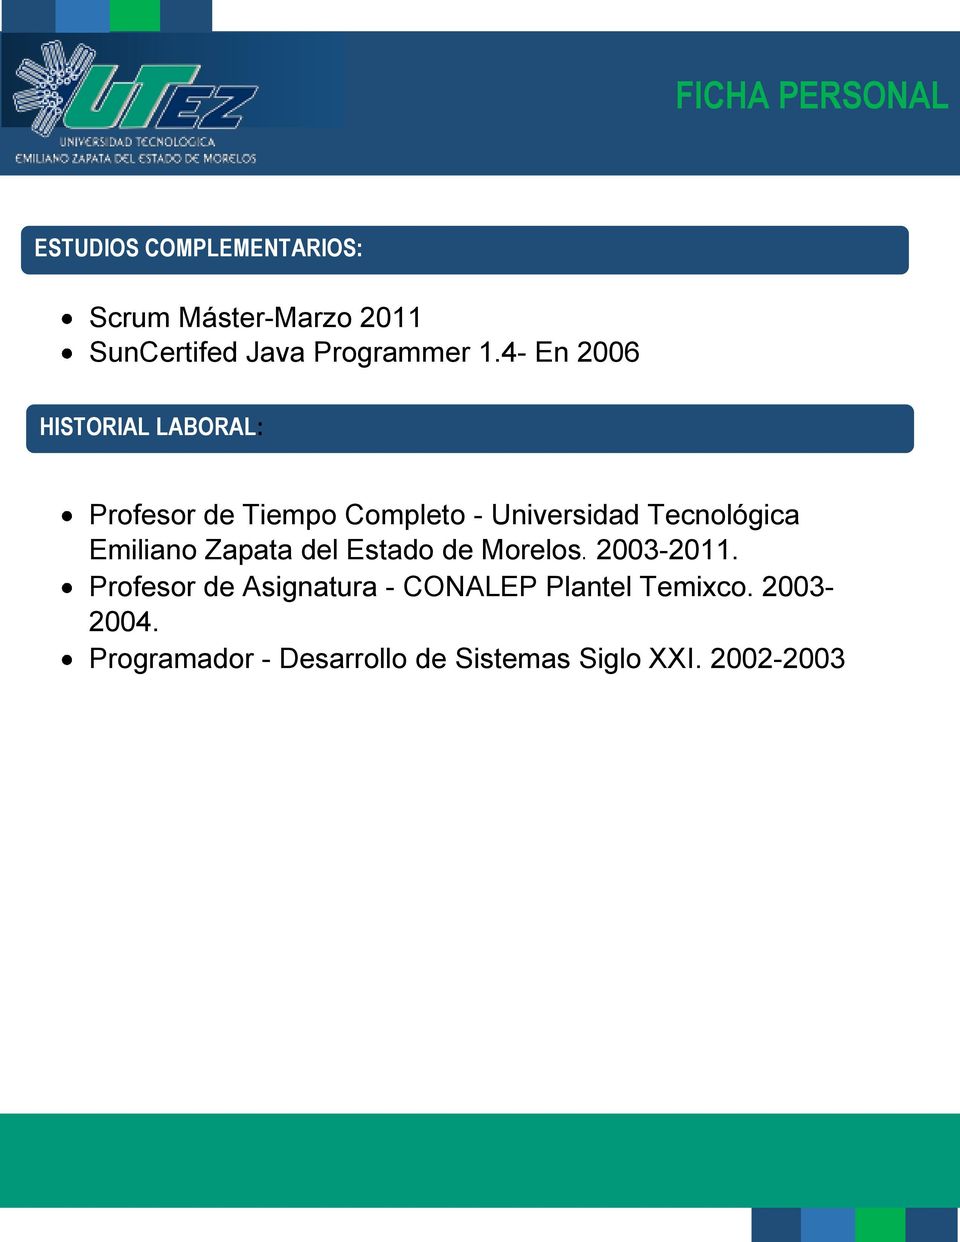 Tecnológica Emiliano Zapata del Estado de Morelos. 2003-2011.